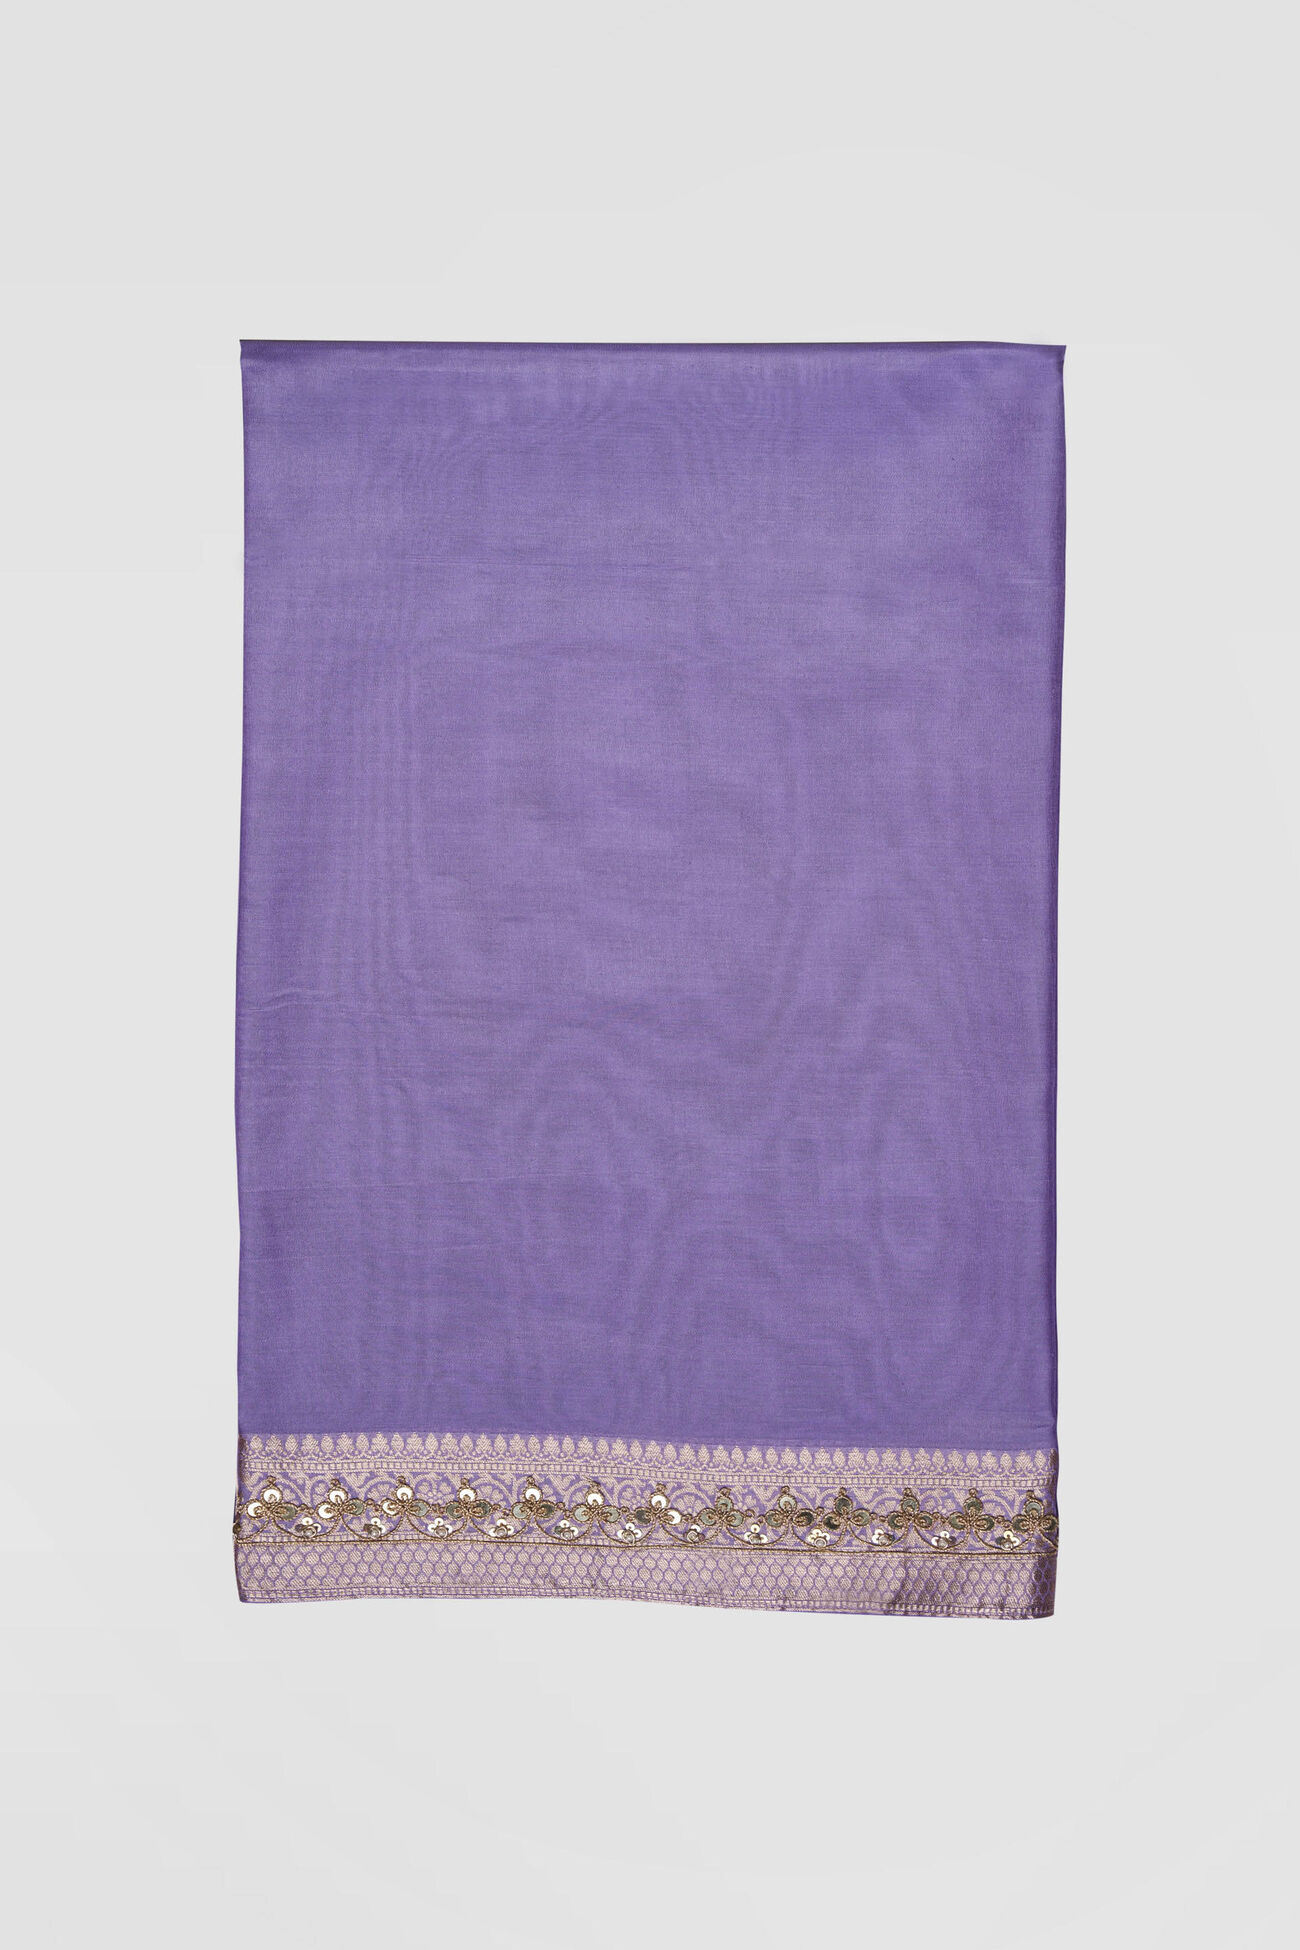 Briti Benarasi Silk Embroidered Saree, Lilac, image 7